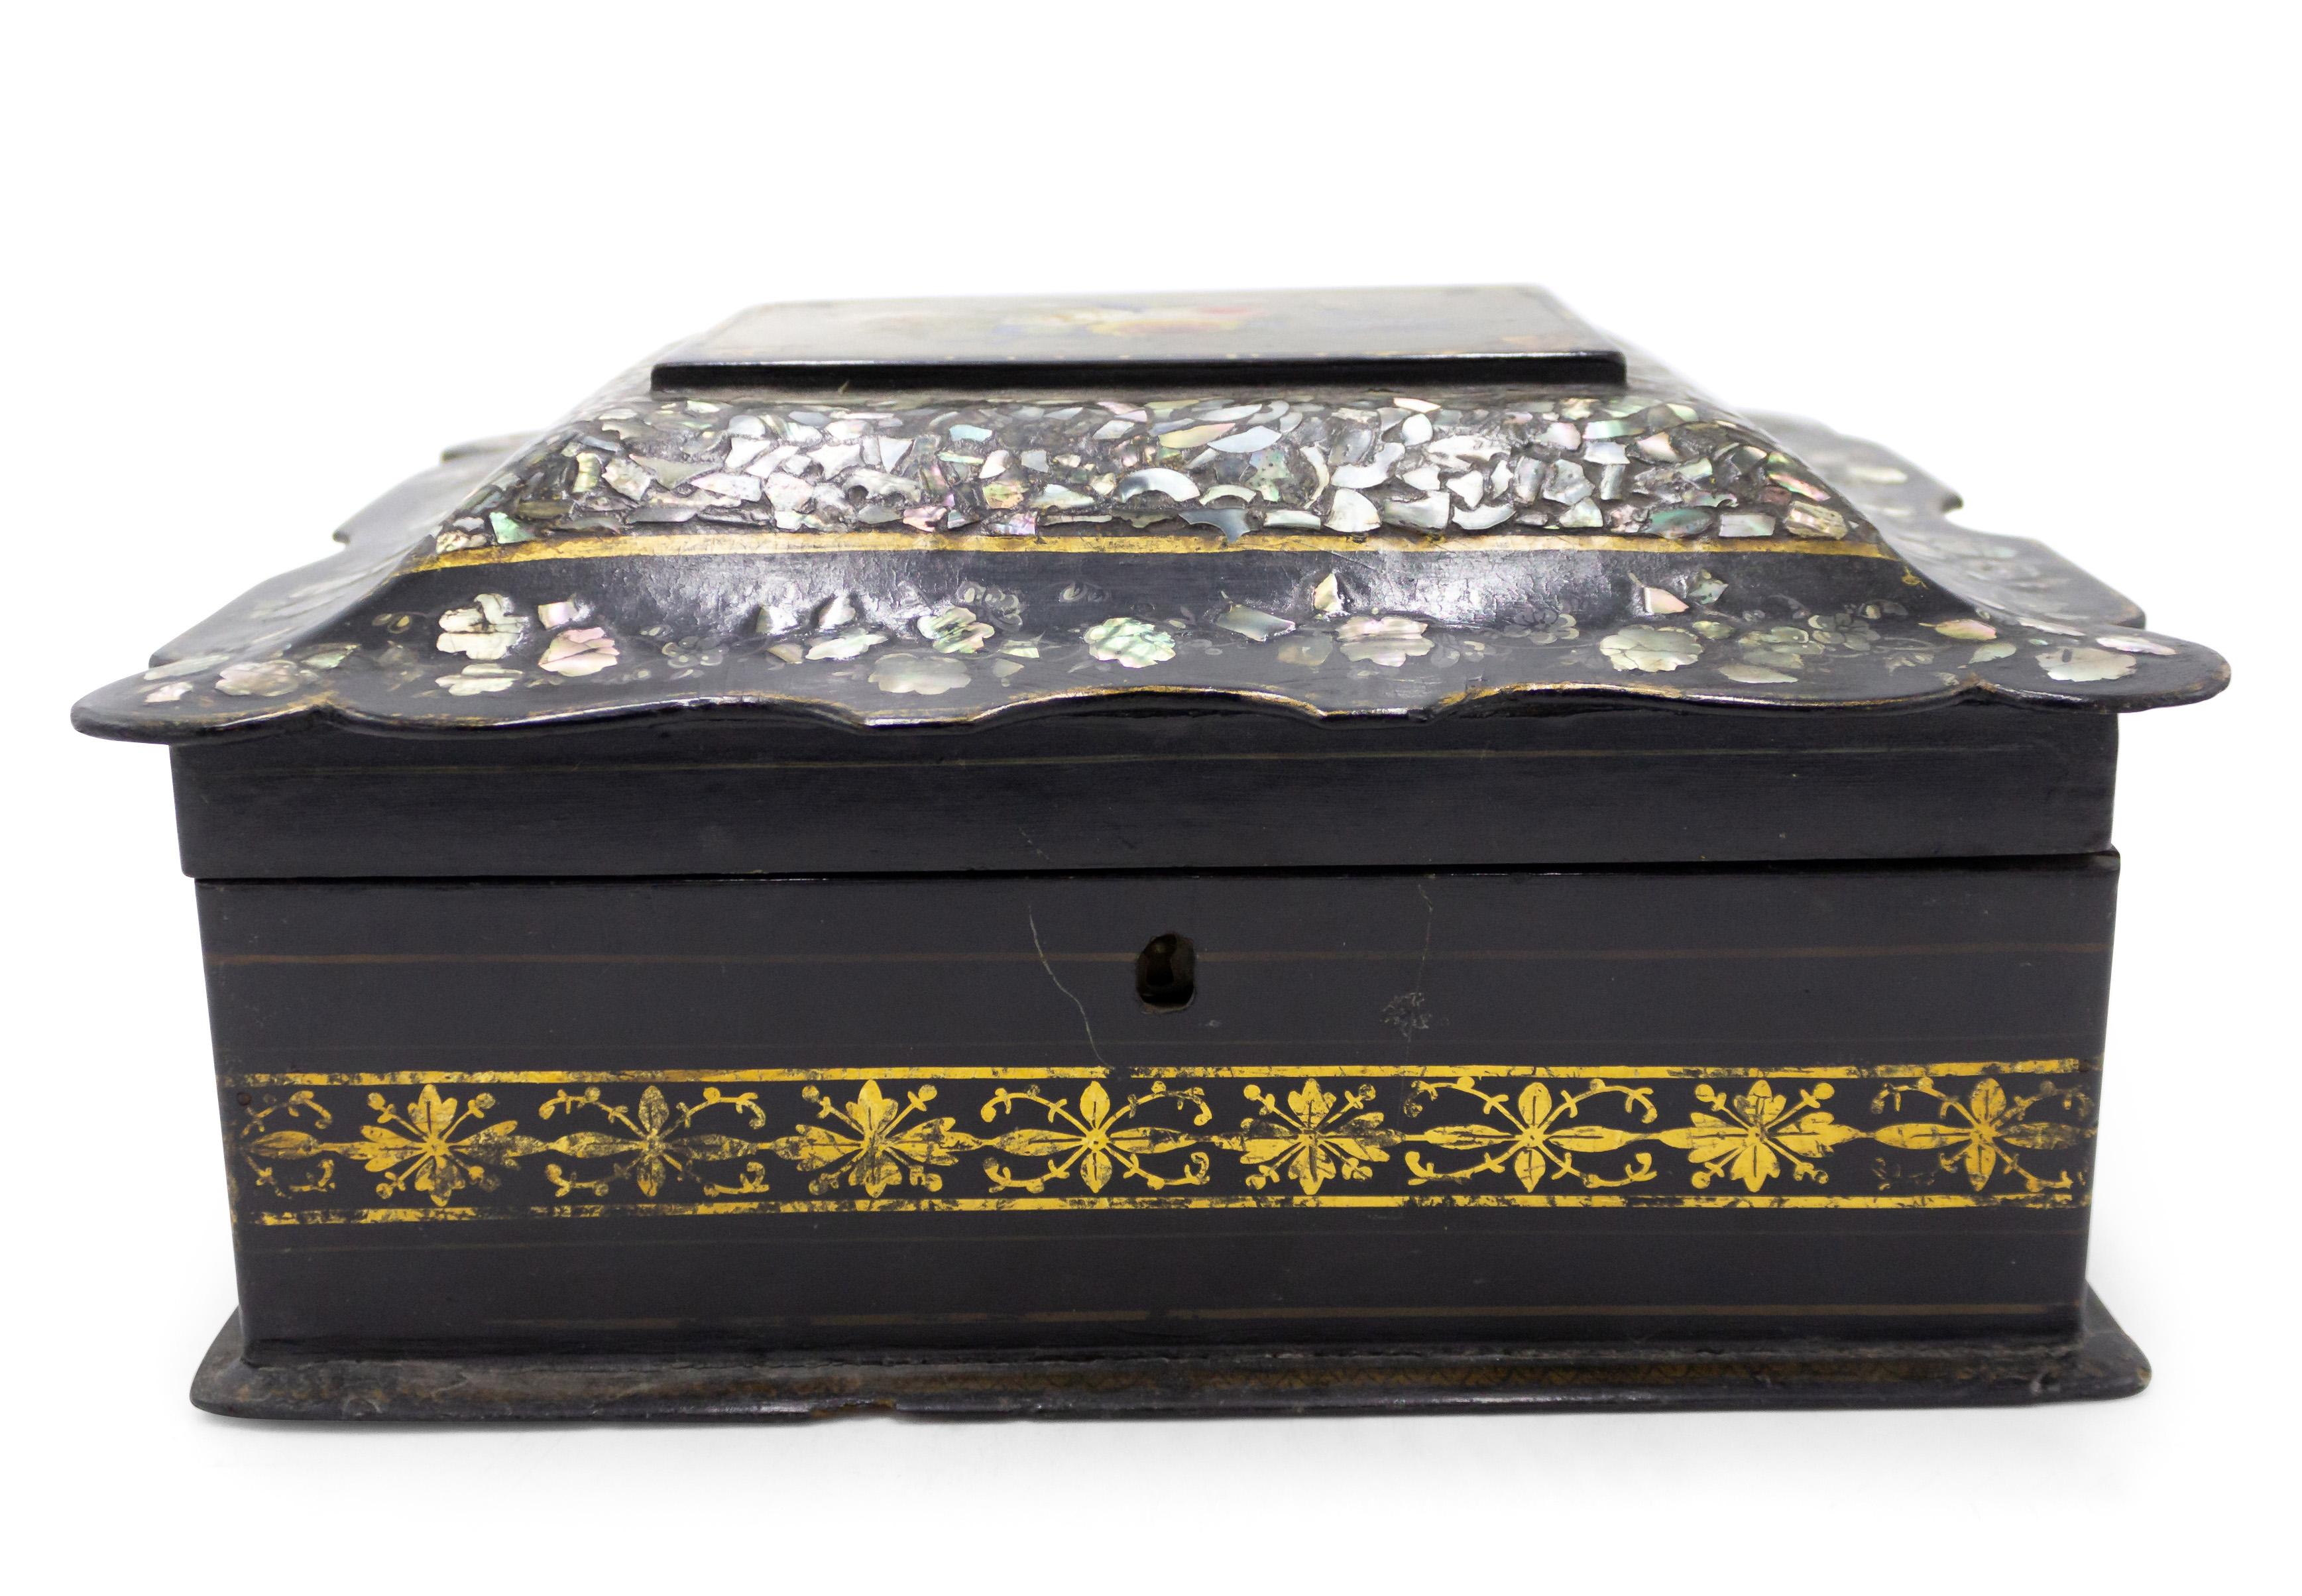 Boîte victorienne anglaise en papier mâché incrustée de perles avec dessus peint festonné et floral.
 